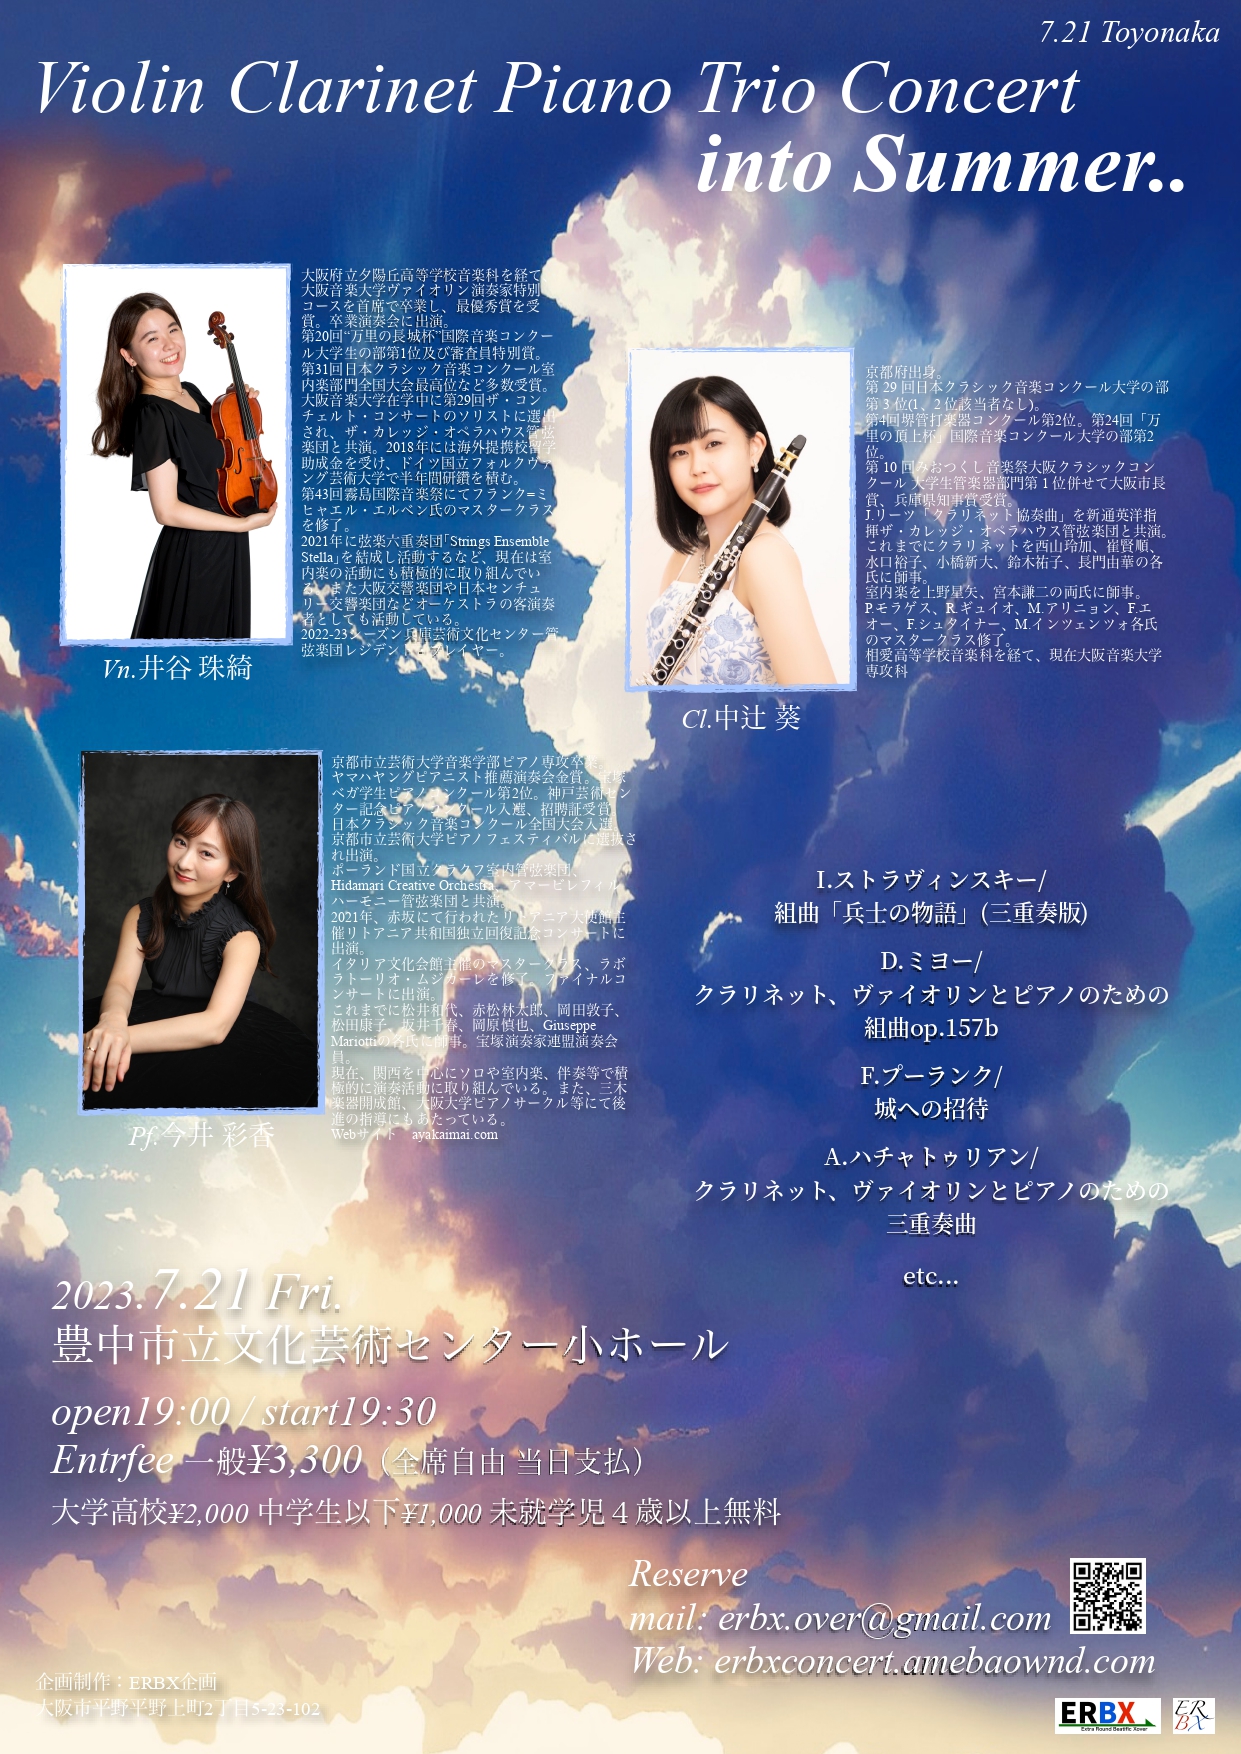 Violin Clarinet Piano Trio Concert “into Summer..”